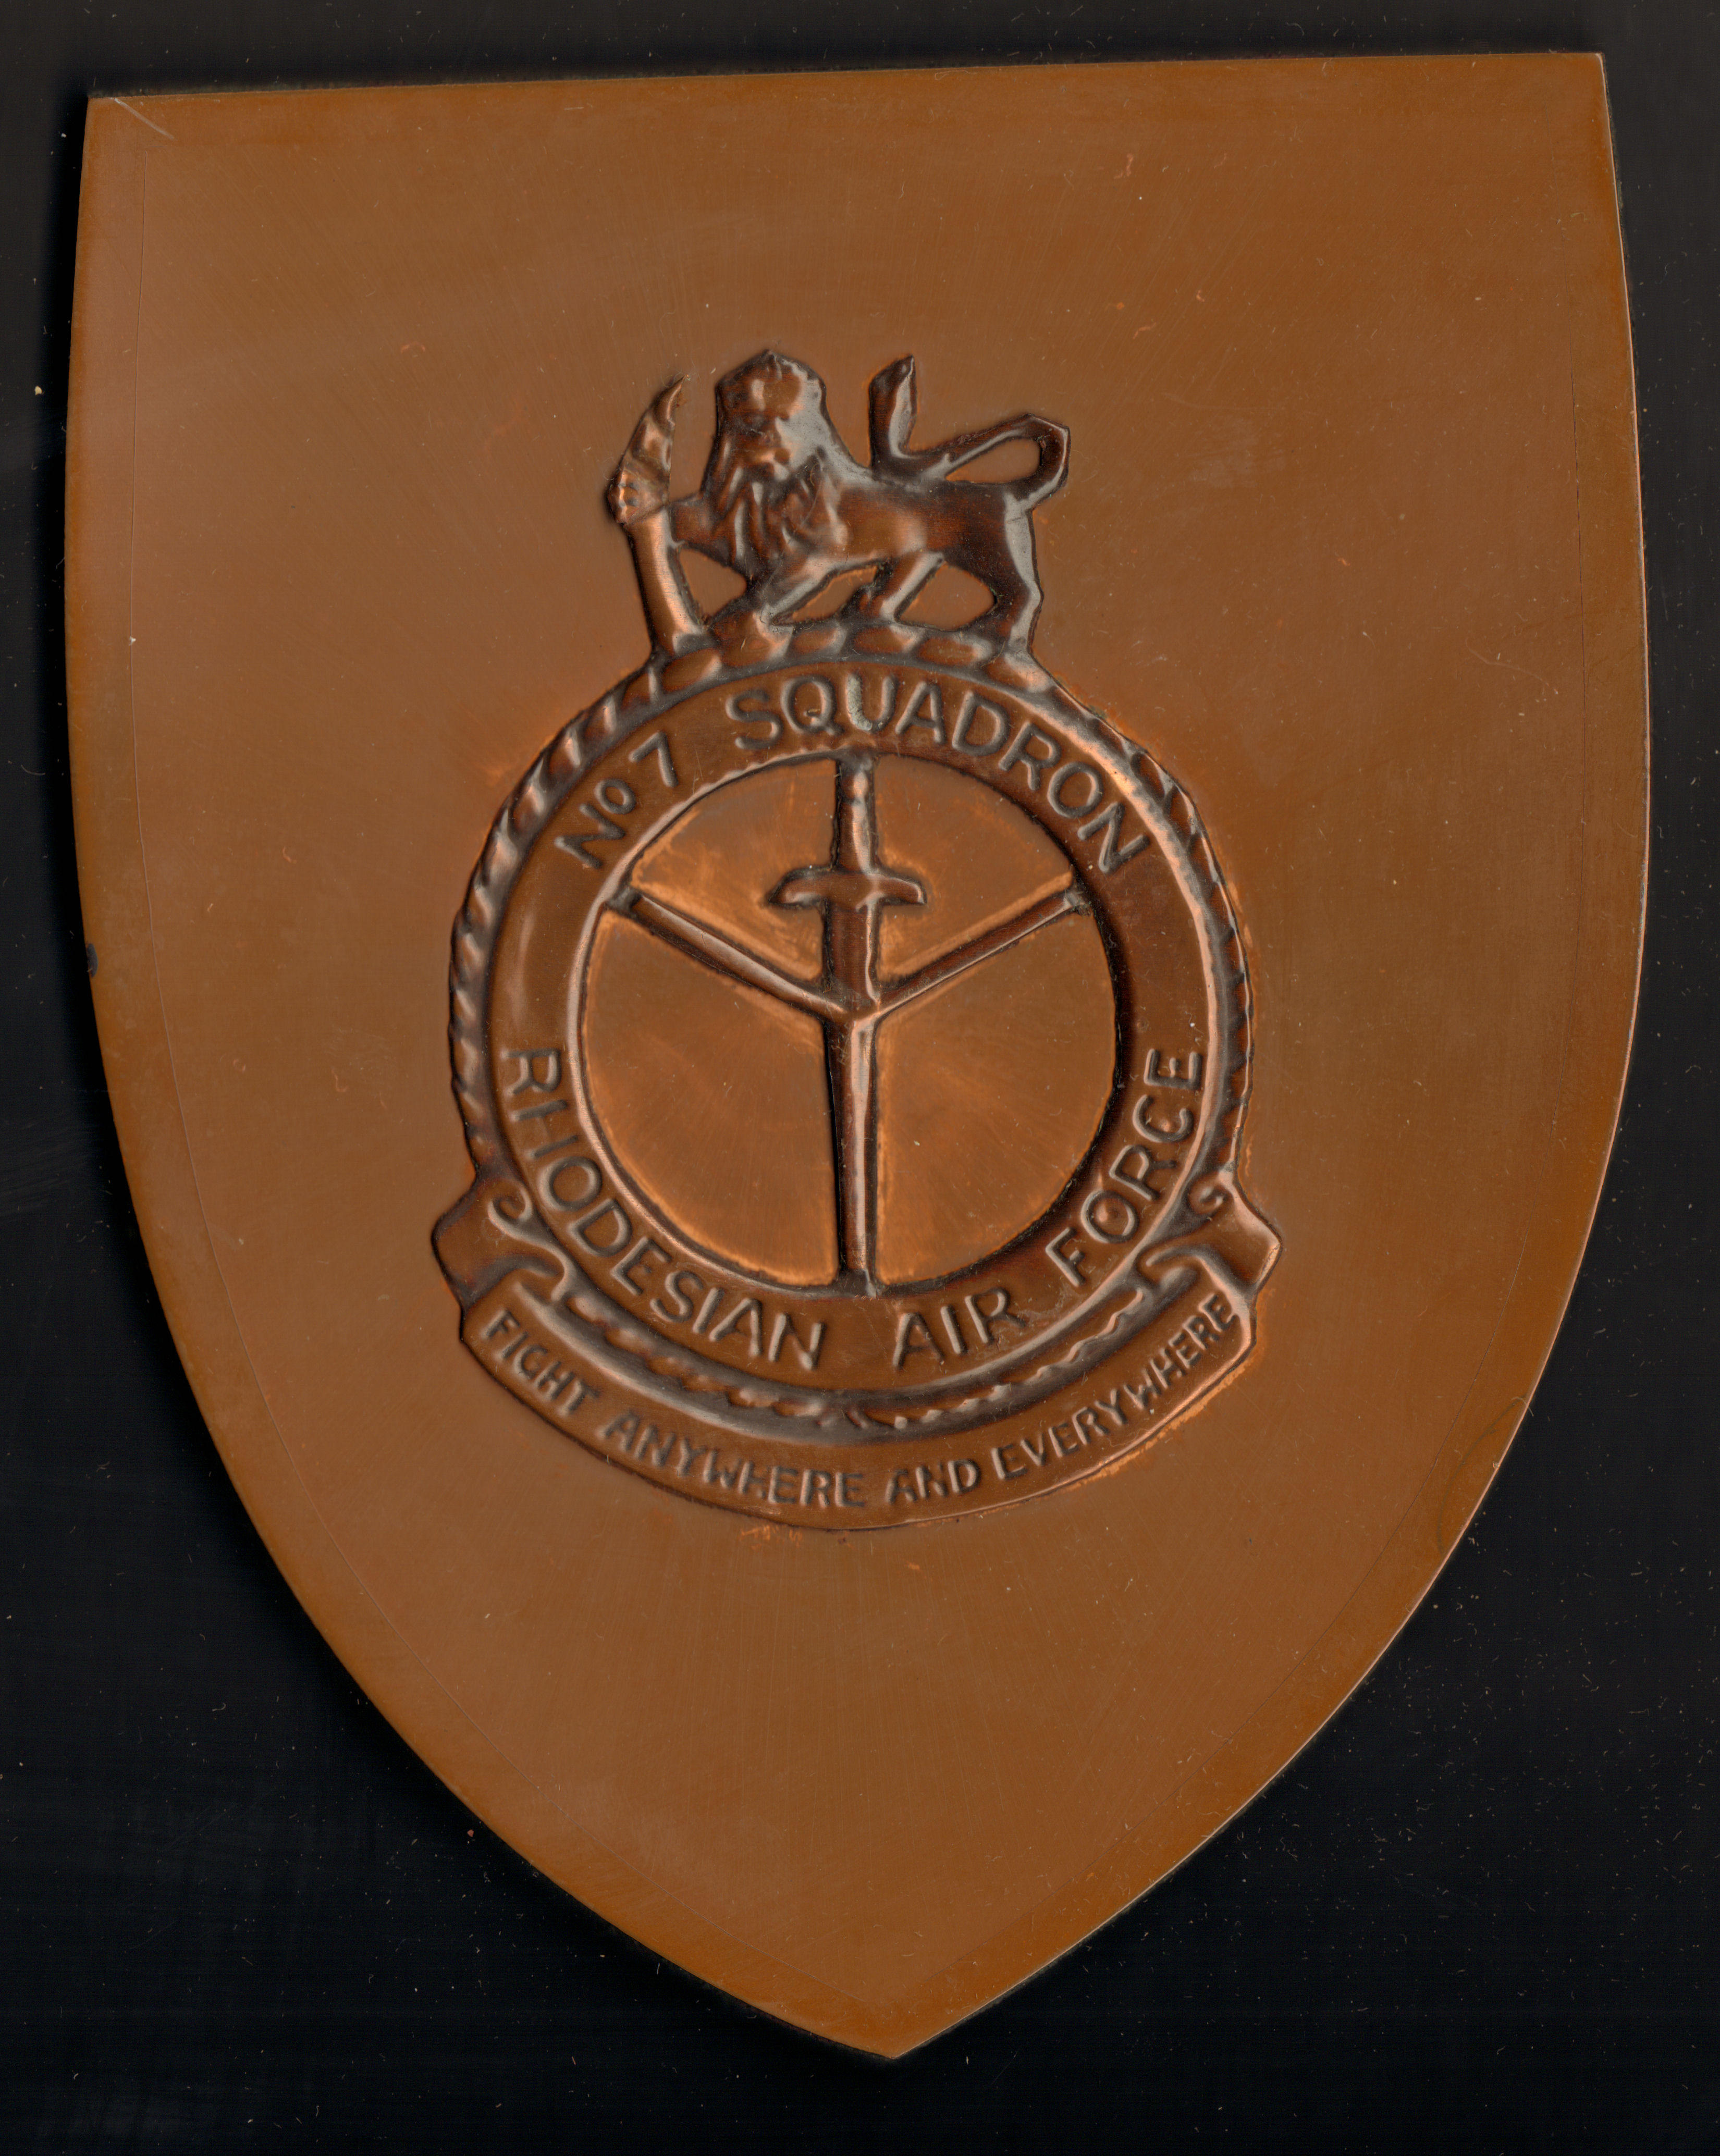 Rhodesian Air Force, No. 7 Squadron